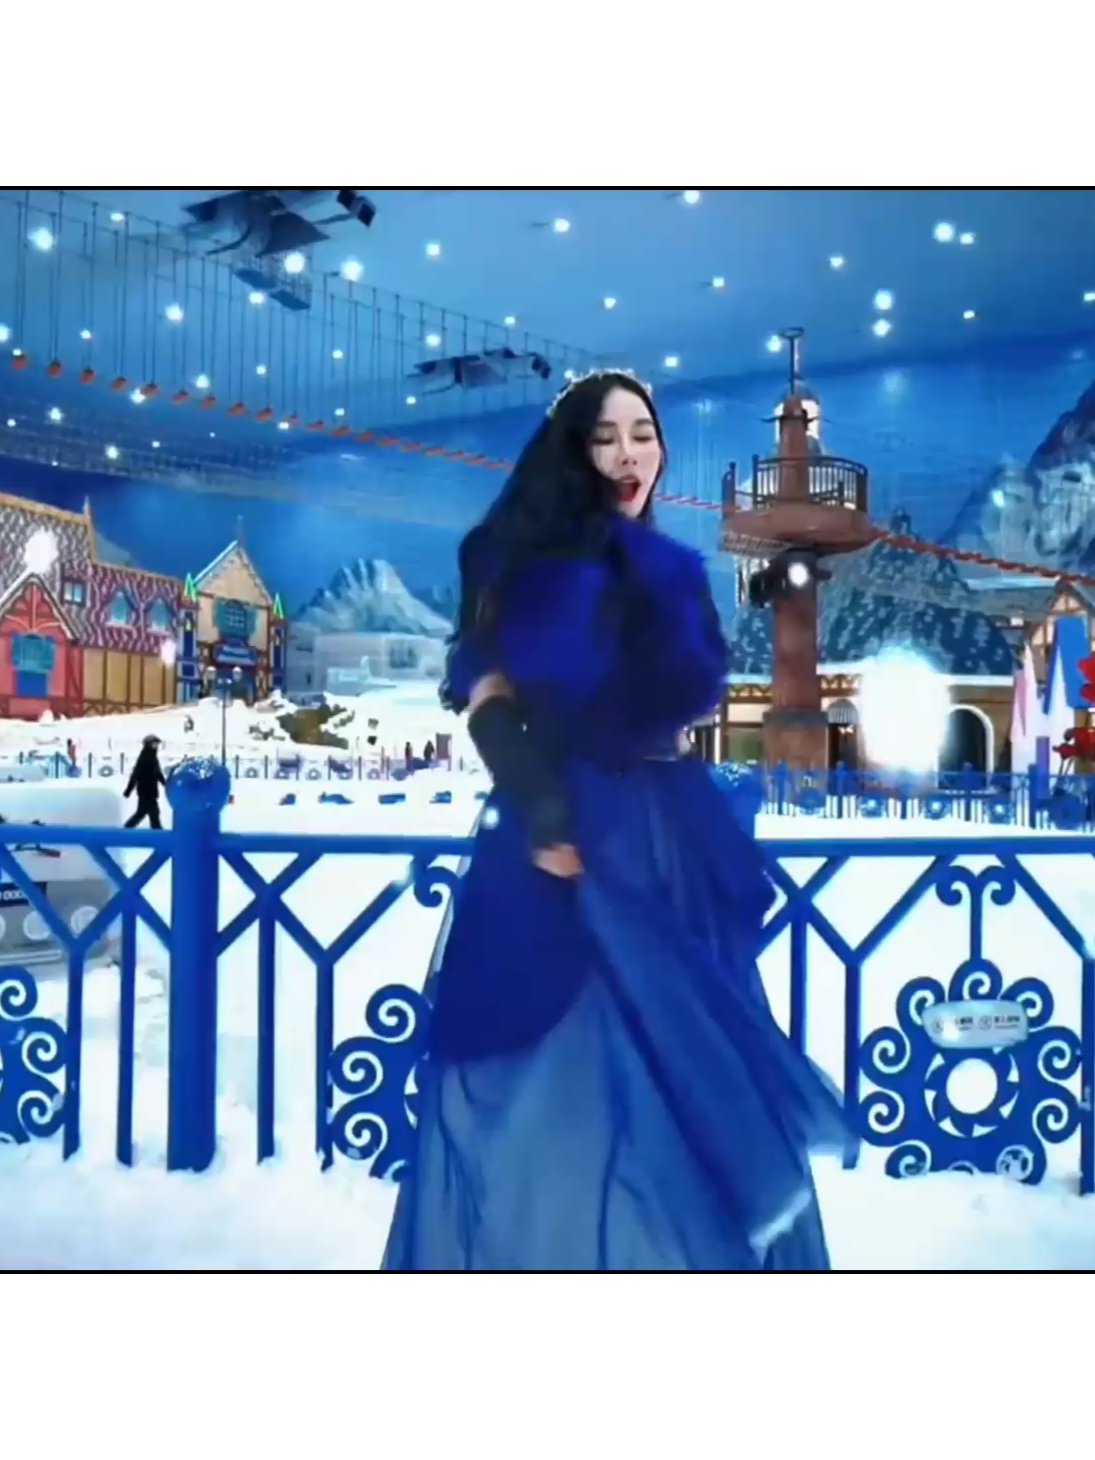 小惠爱生活，五一去哪里玩，童话里的冰雪世界找到了，五一假期在广州成为冰雪公主吧 #广州热雪奇迹 #冰